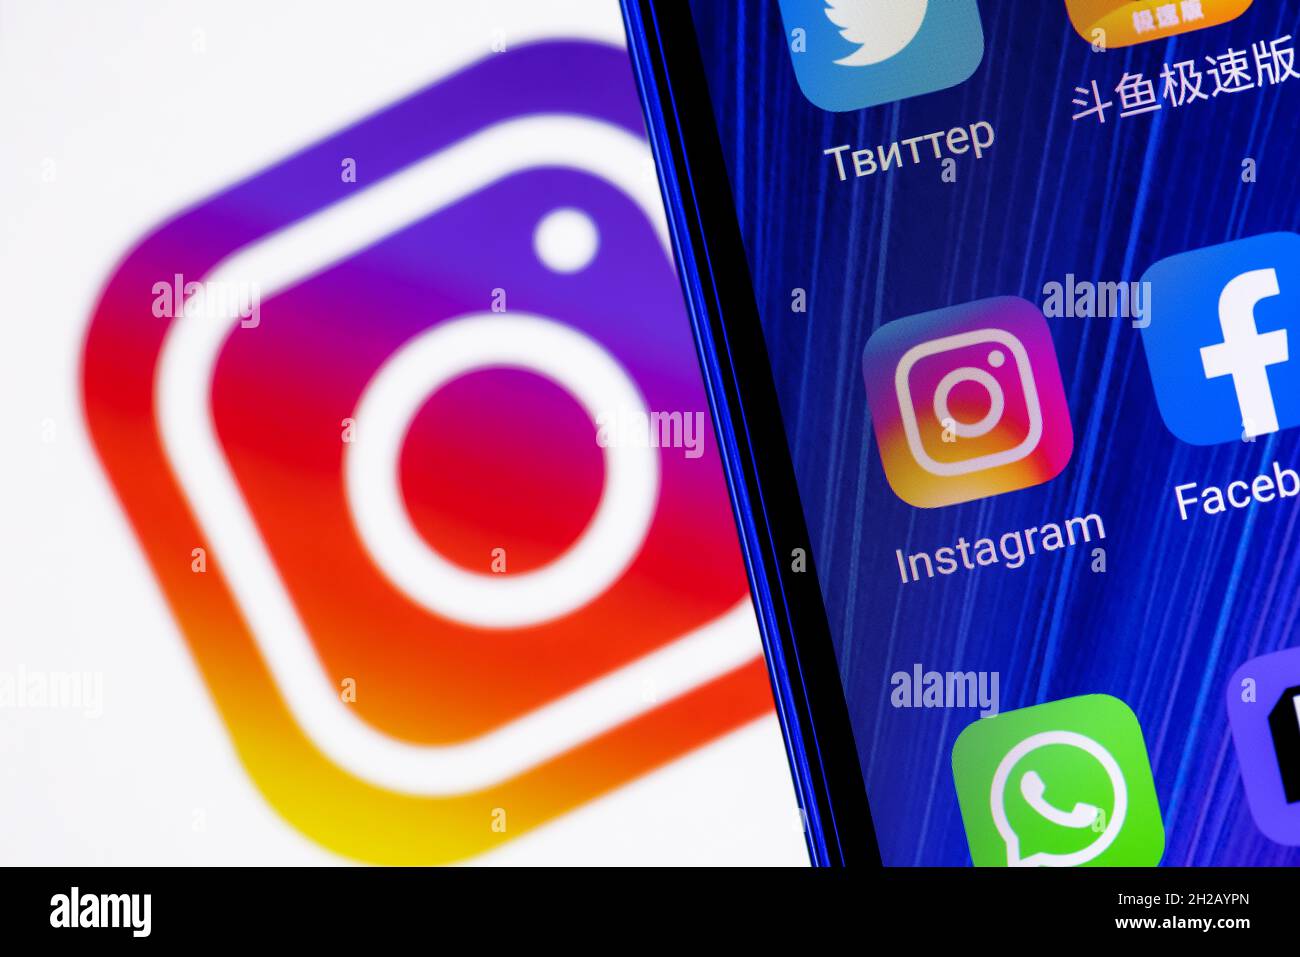 Das Symbol der Instagram Social Network Anwendung unter anderem auf dem Smartphone-Bildschirm. Auf dem Hintergrund ist das Instagram-Logo zu sehen. Stockfoto